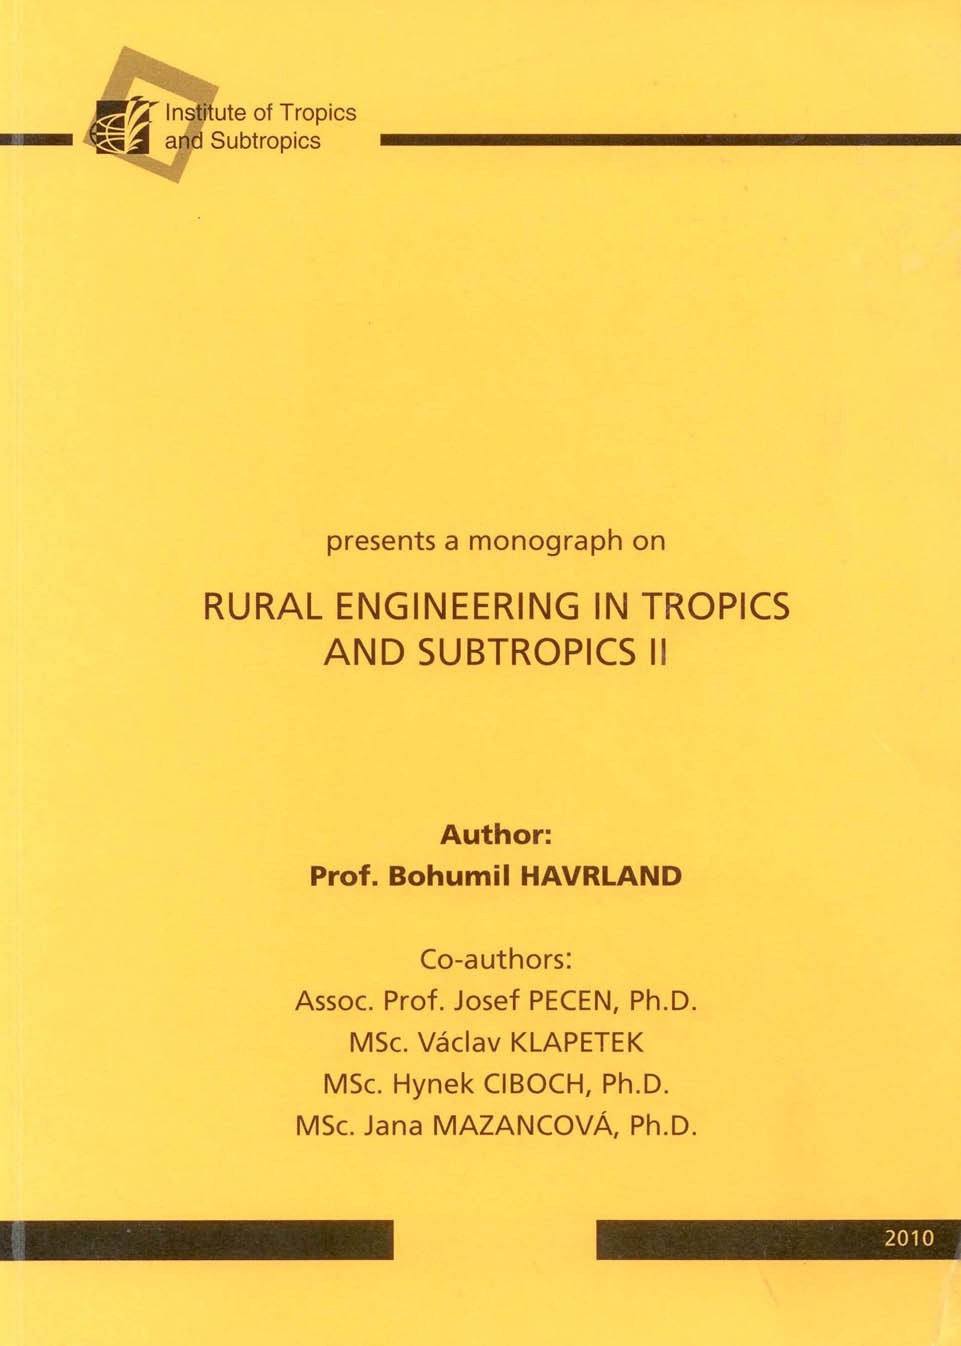 Rural Engineering in Tropics and Subtropics II, 307